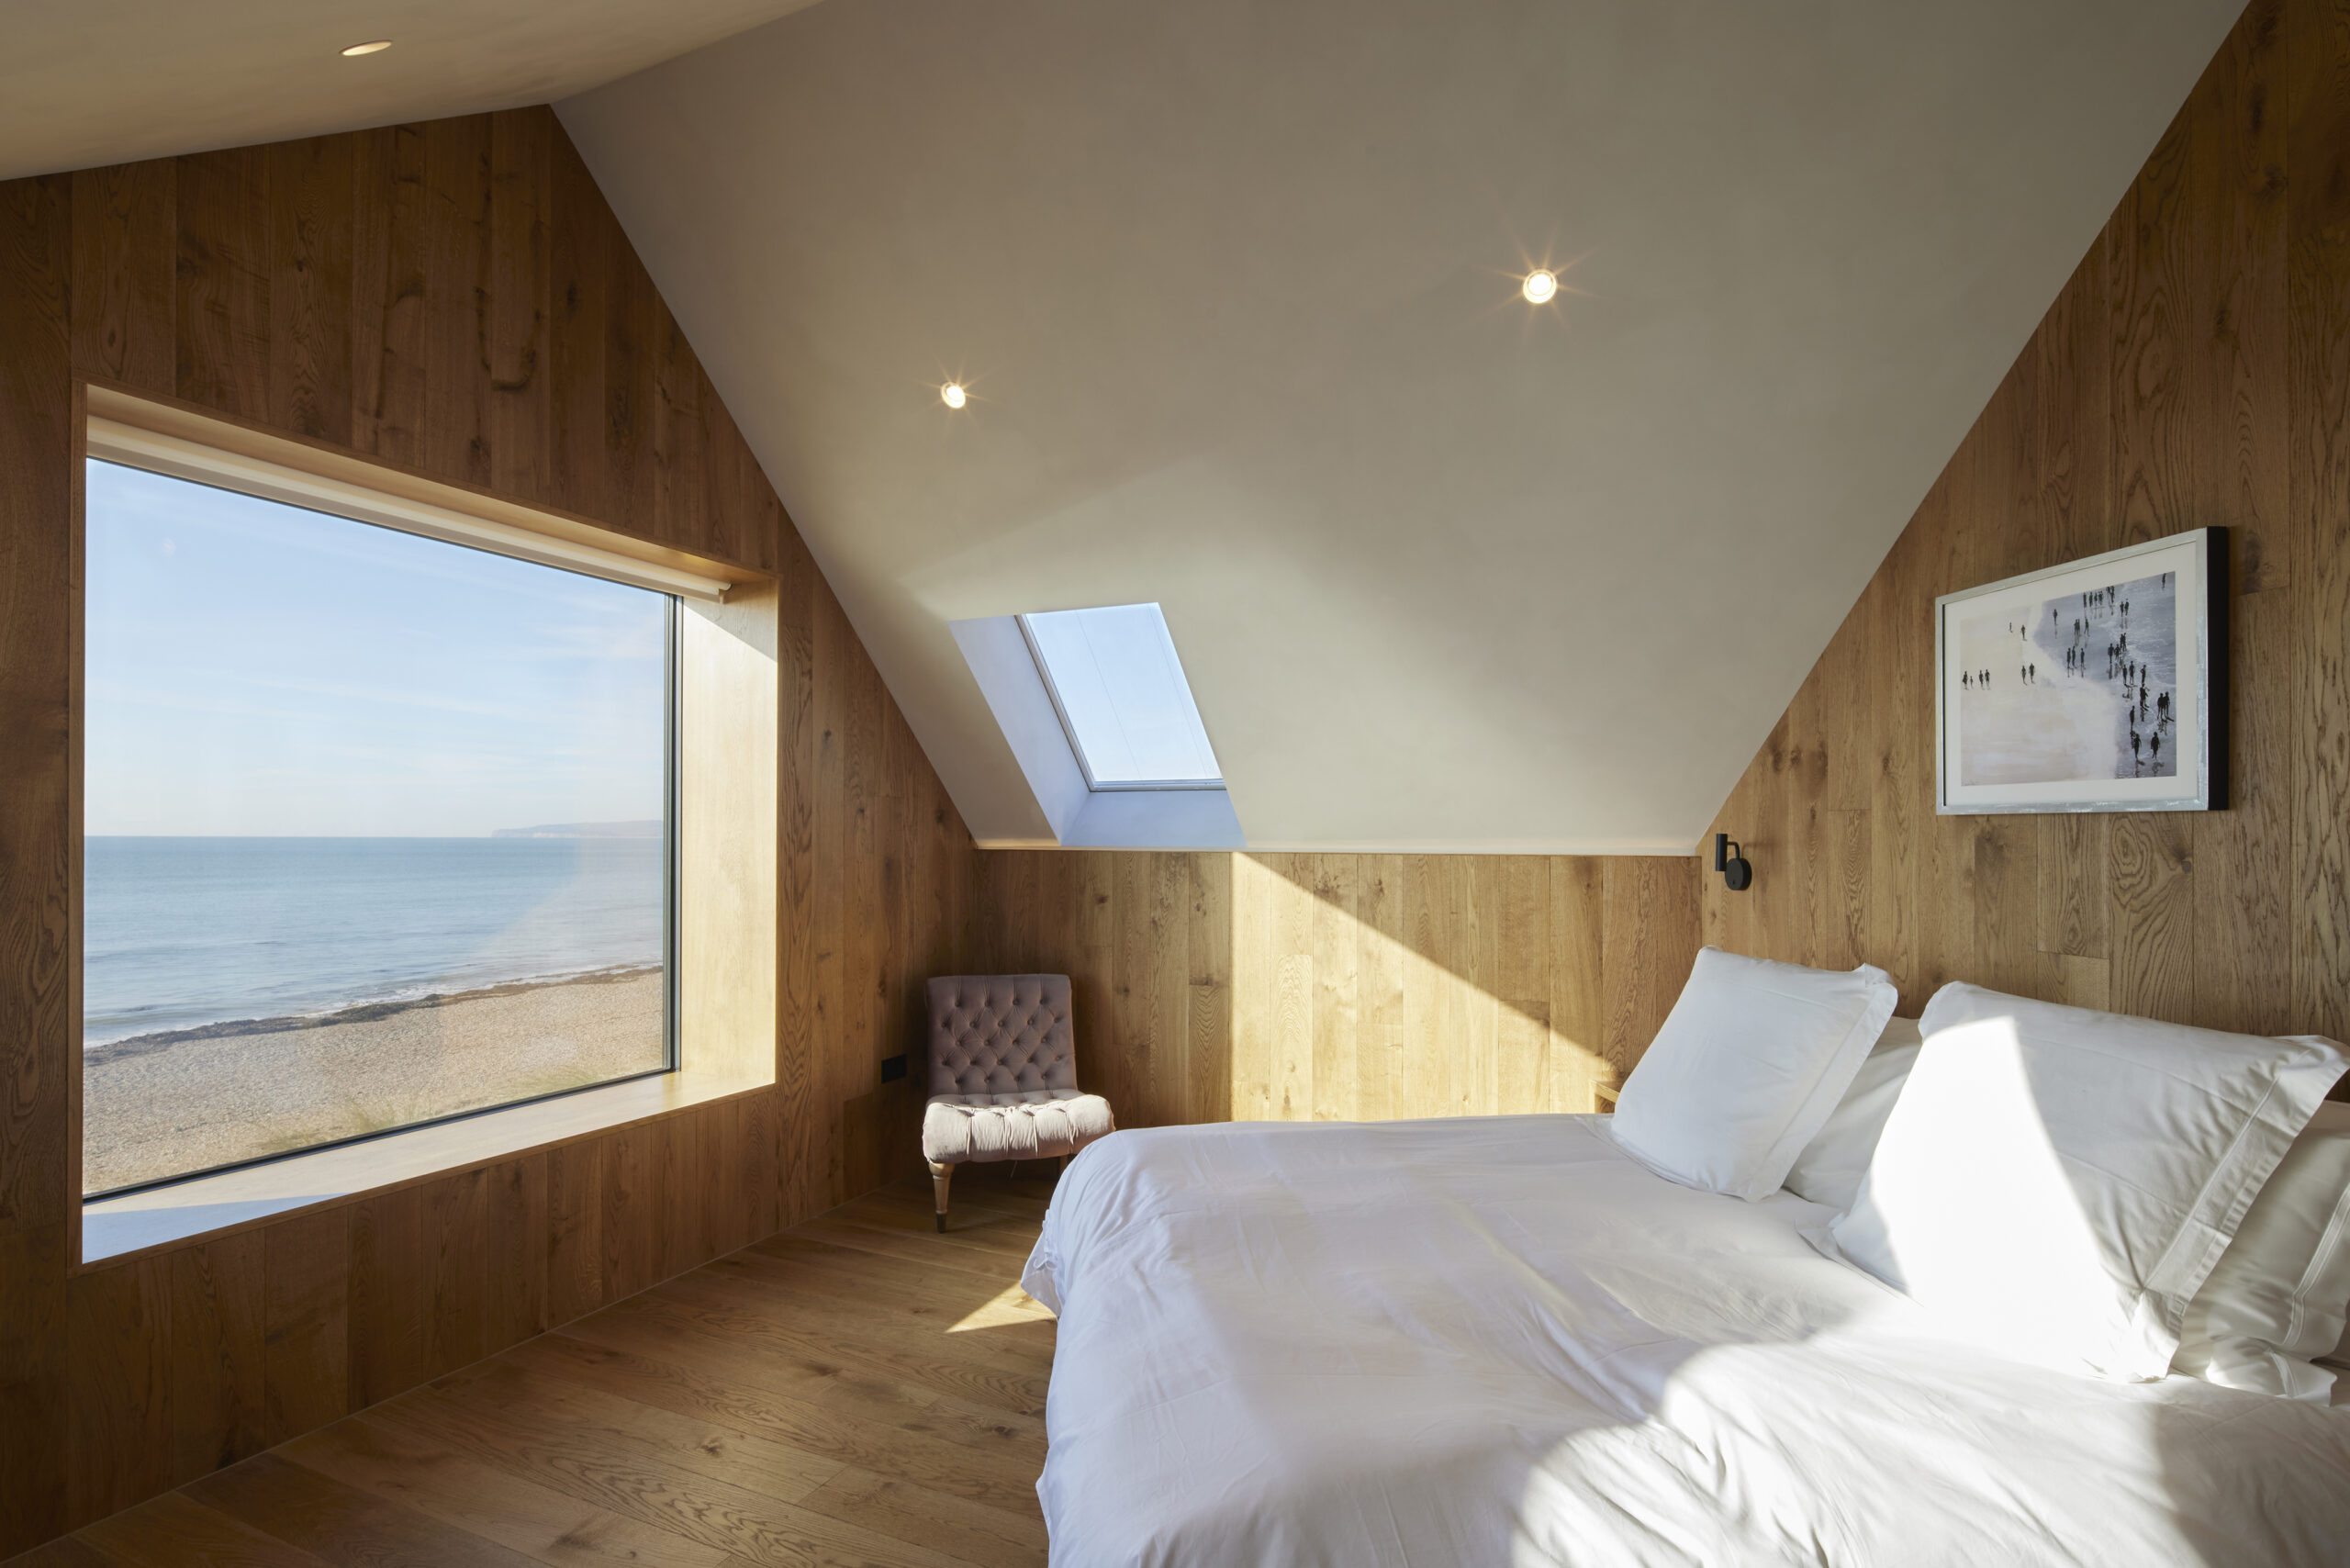 Seabreeze - bedroom view